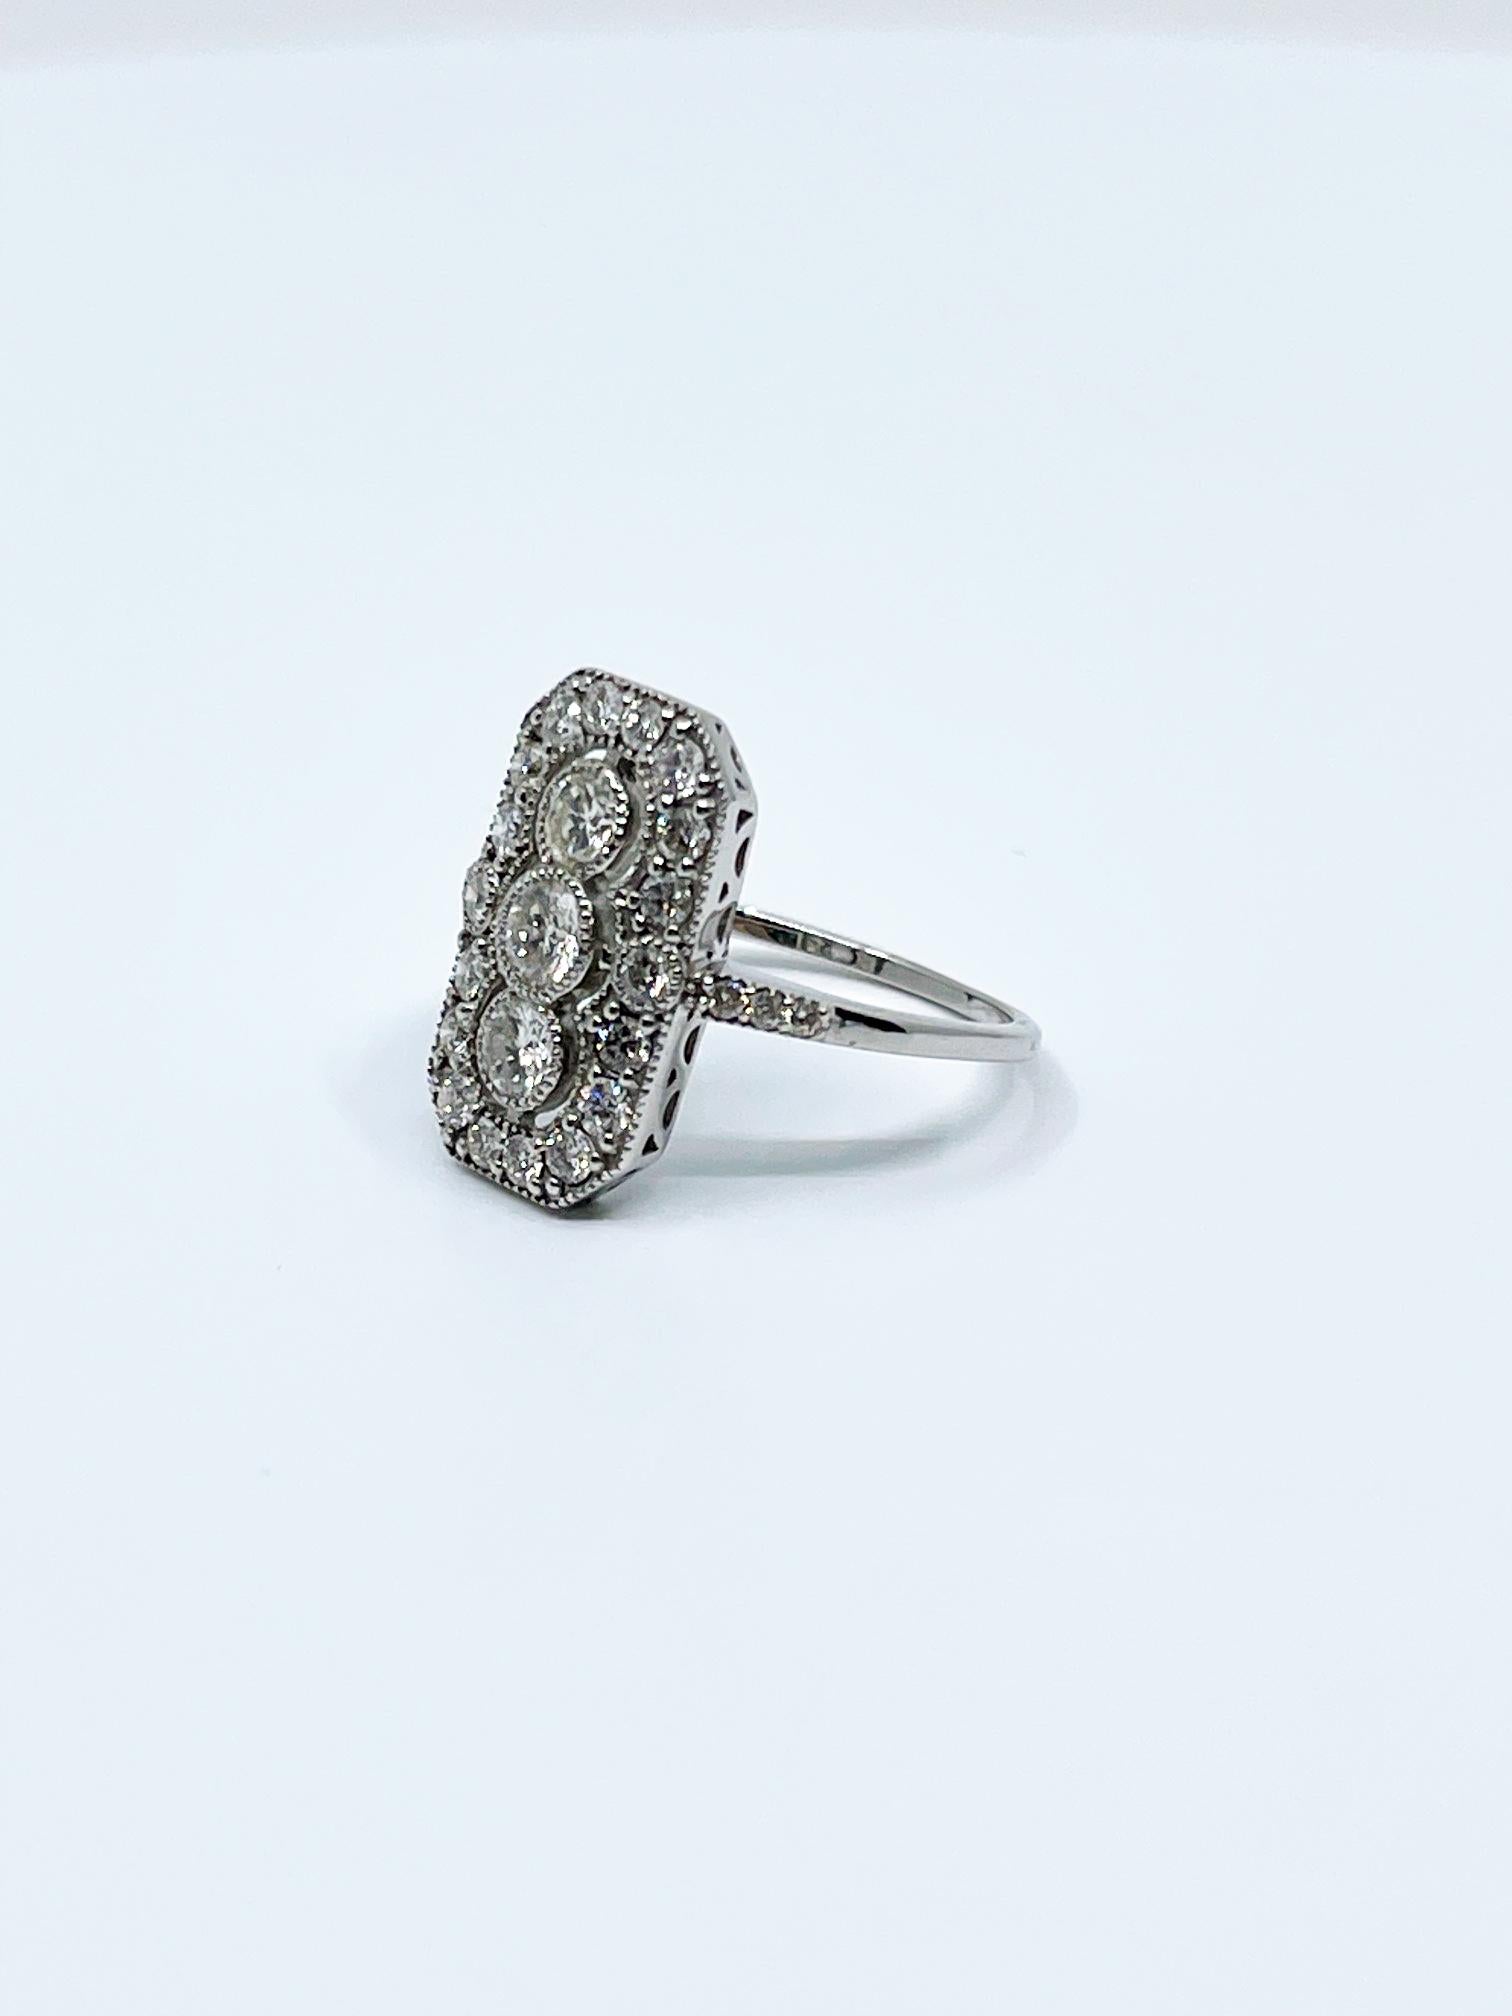 Brilliant Cut 3 Stone Diamond Art Deco Style Ring For Sale